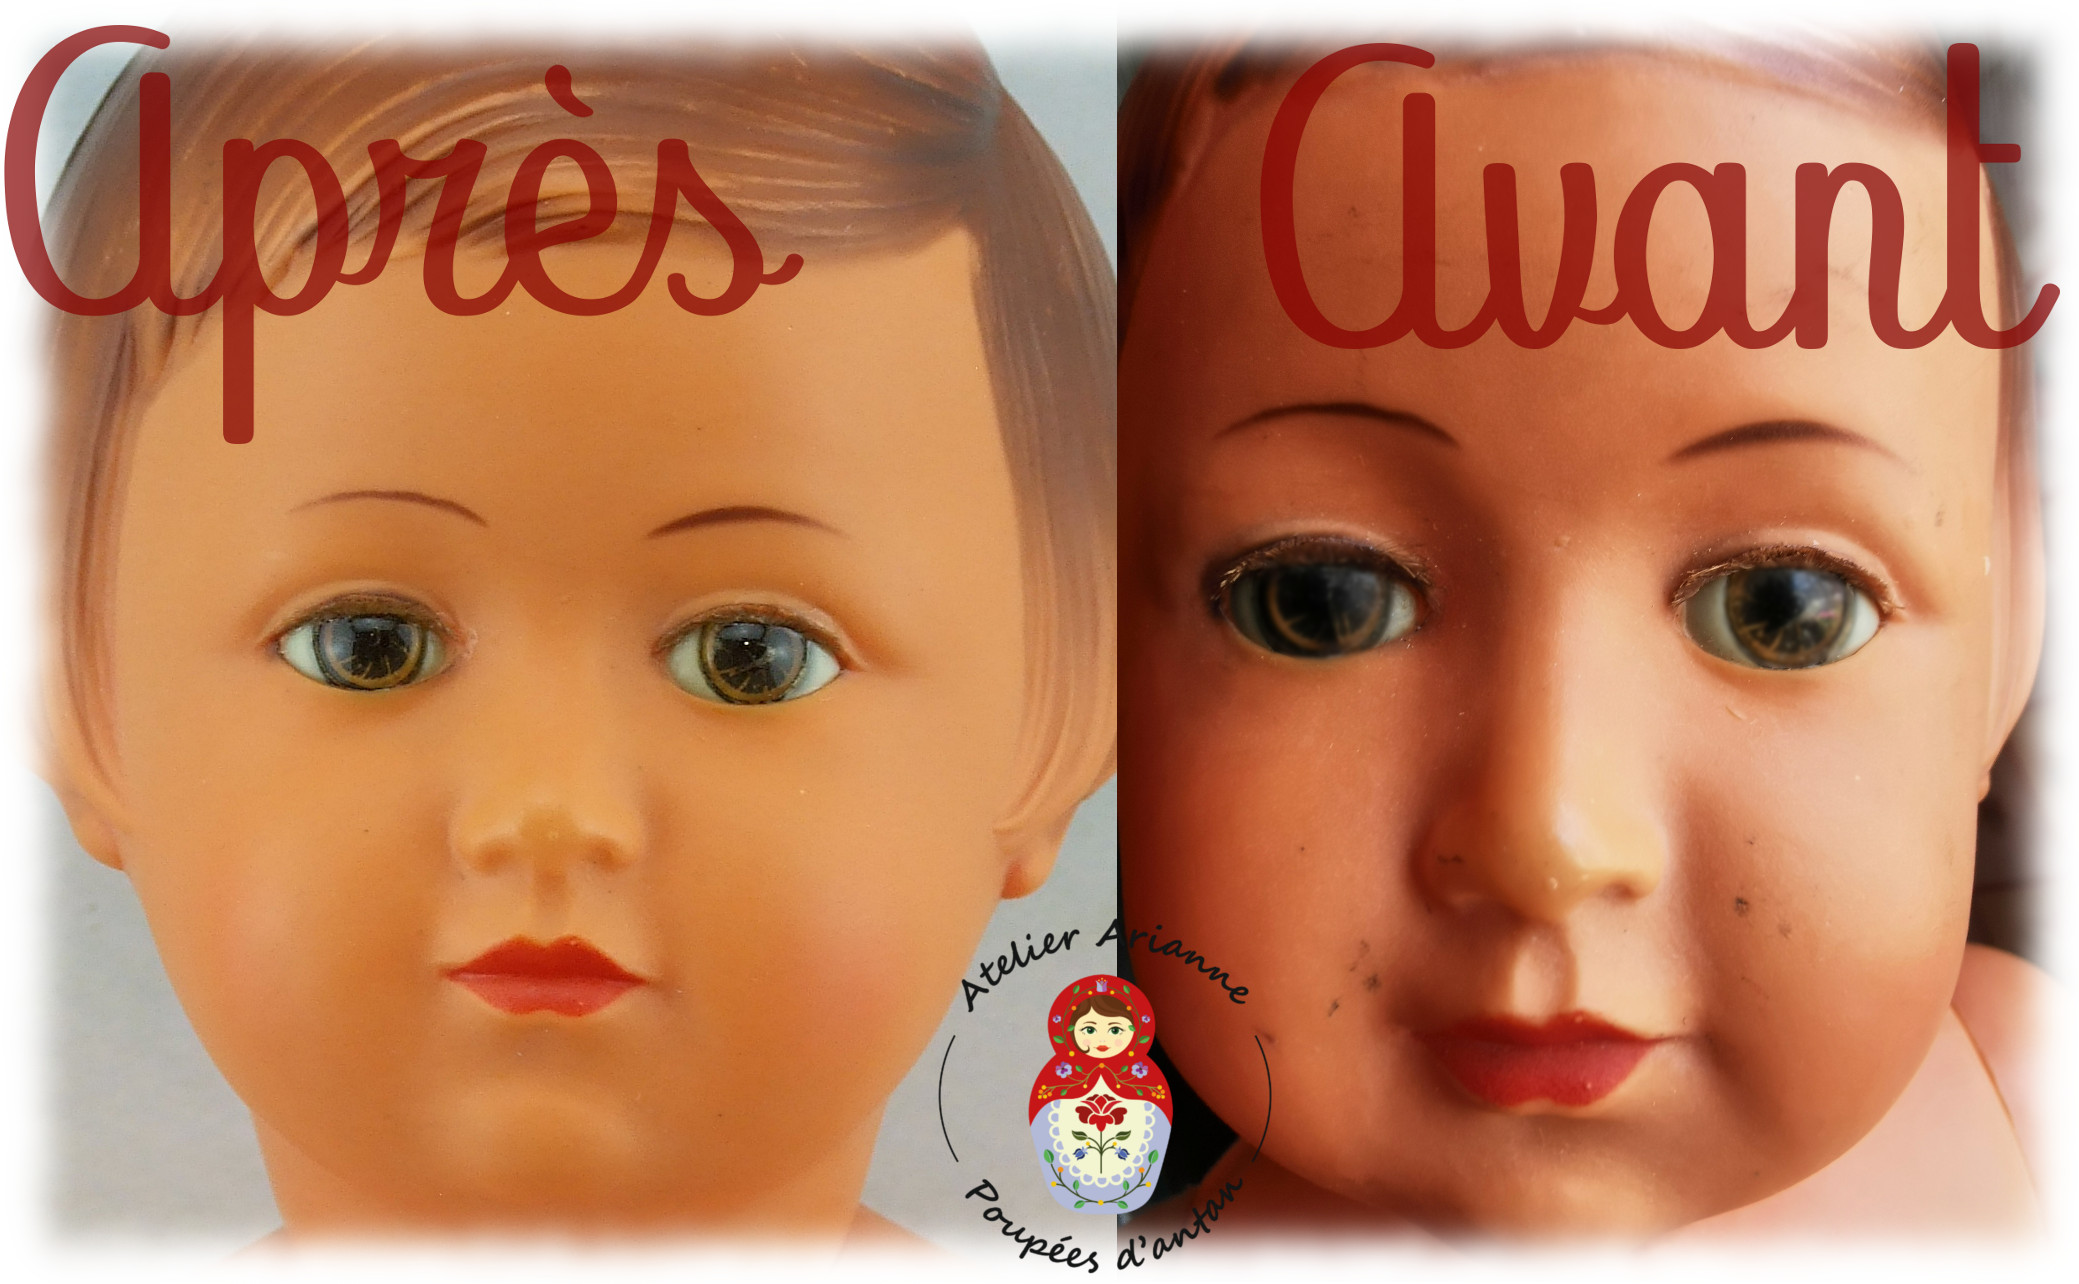 Clinique des poupées, lavage professionnel de la poupée Françoise SNF